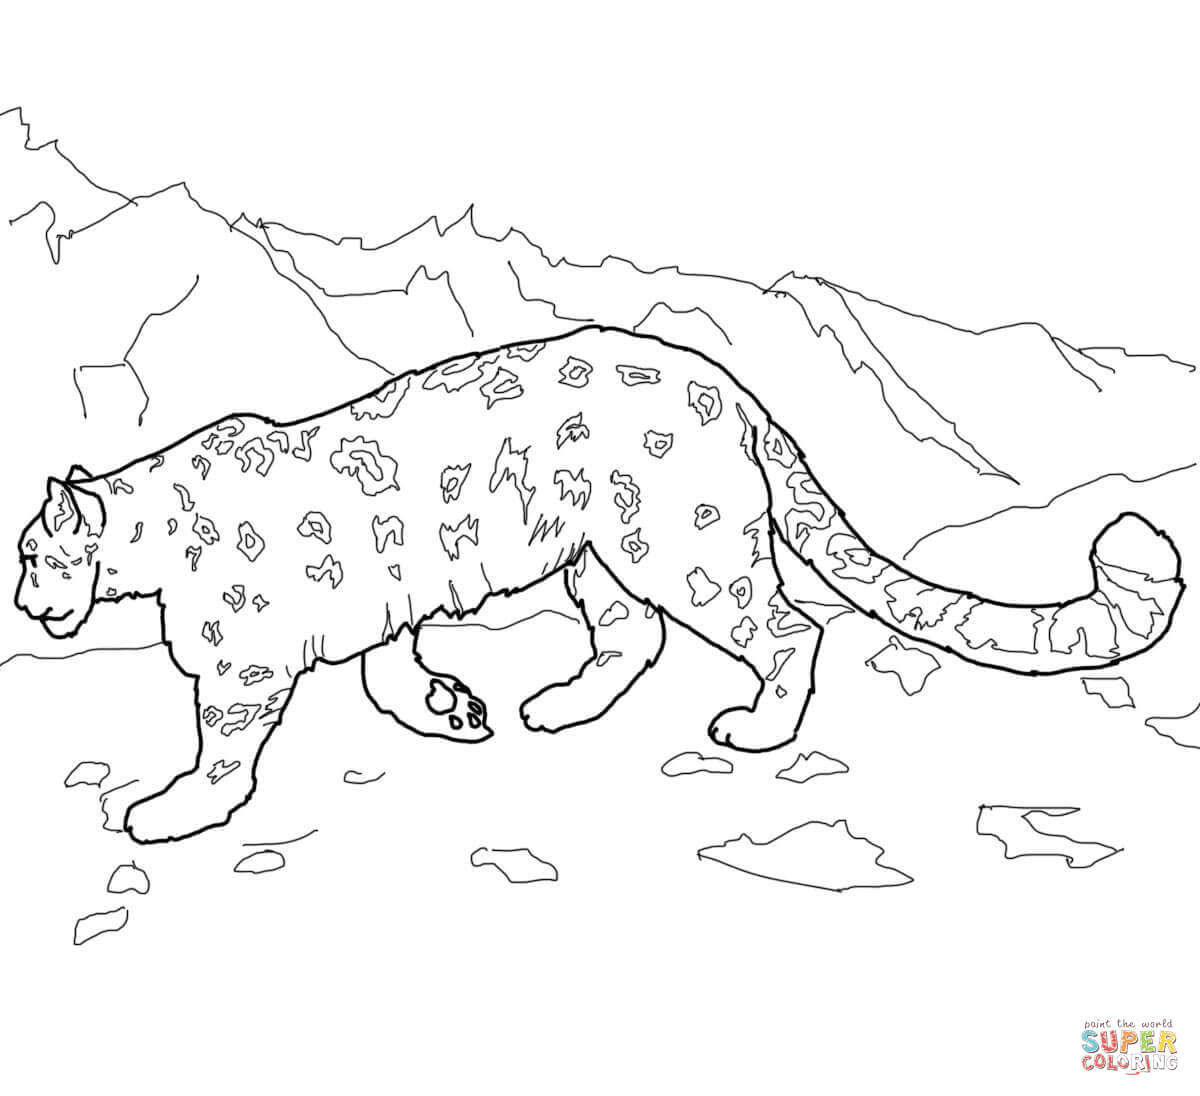 leopard-ausmalbild-0041-q1